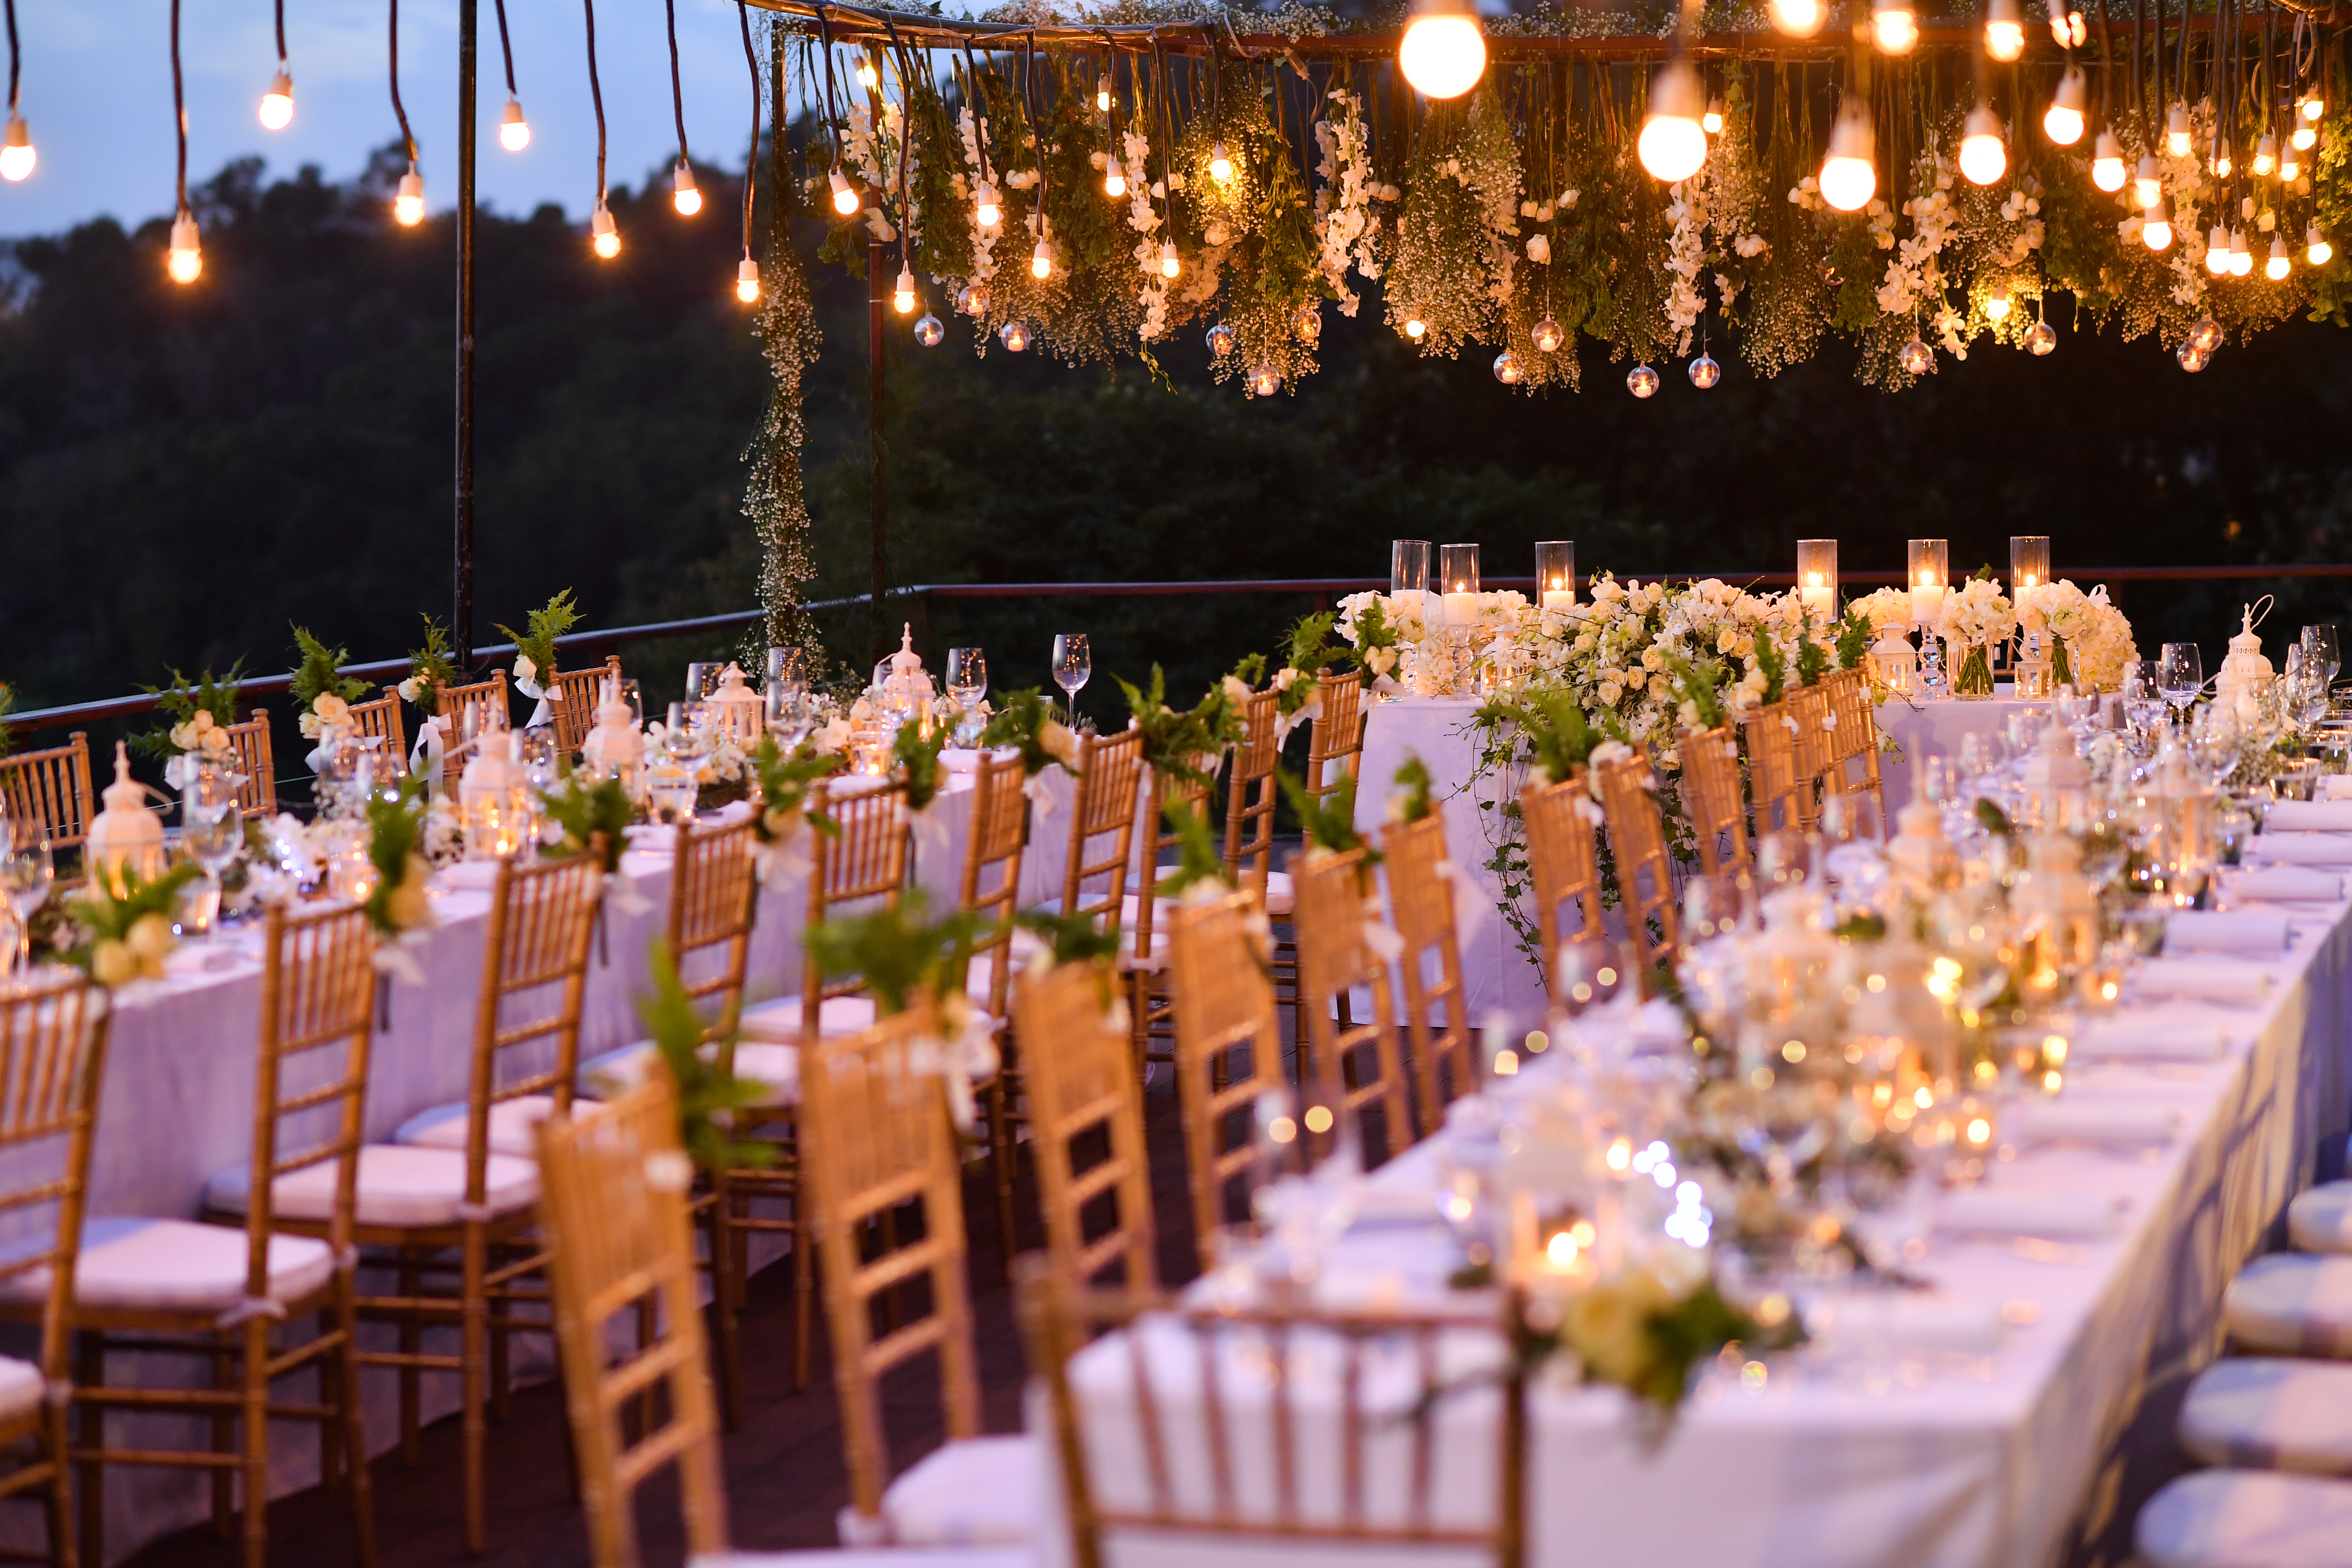 Une photo d'une réception de mariage magnifiquement décorée. | Source : Shutterstock/mammographe